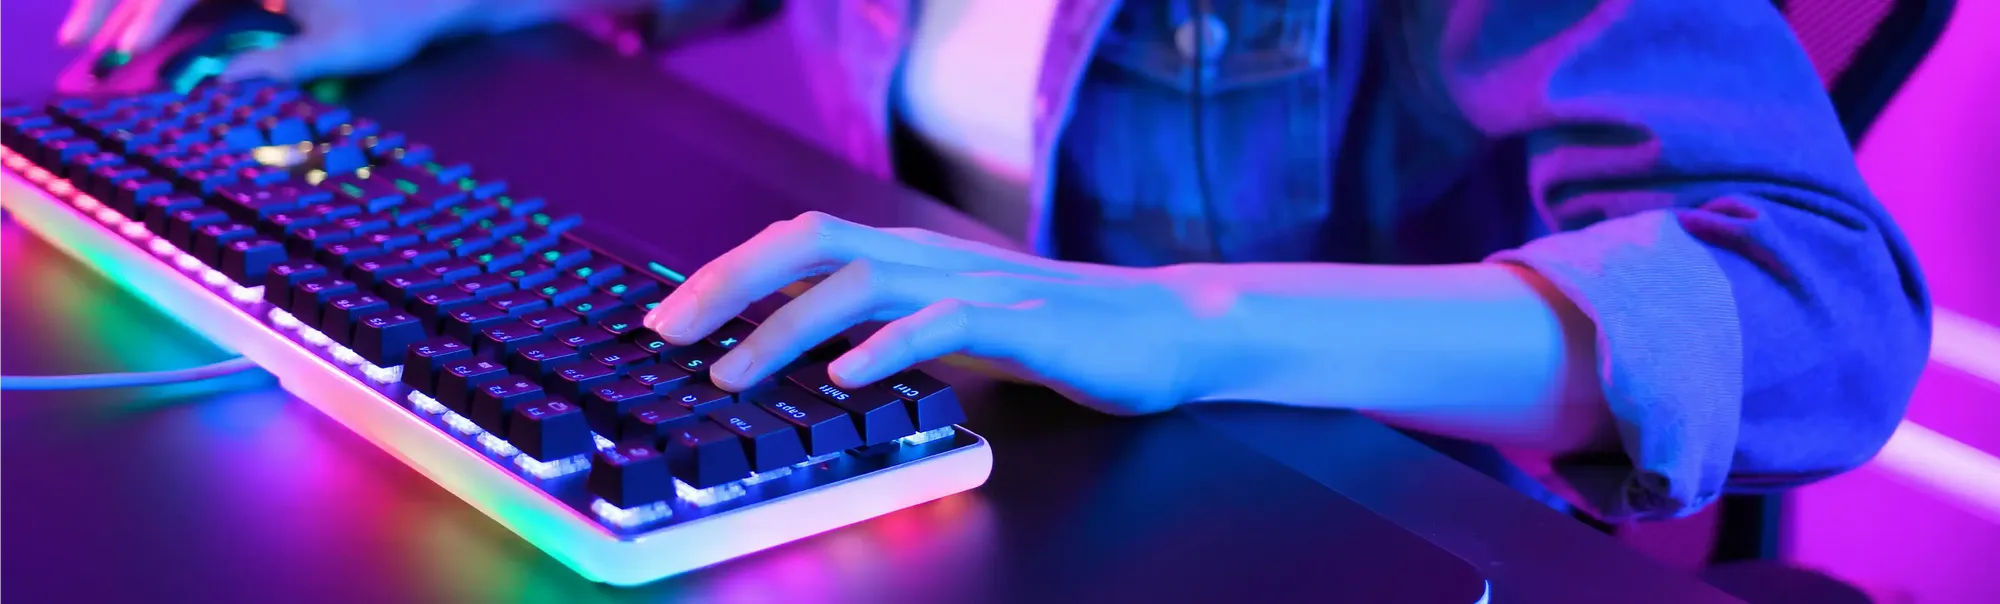 Capa do post: Melhor teclado: confira aqui os melhores modelos para seu computador